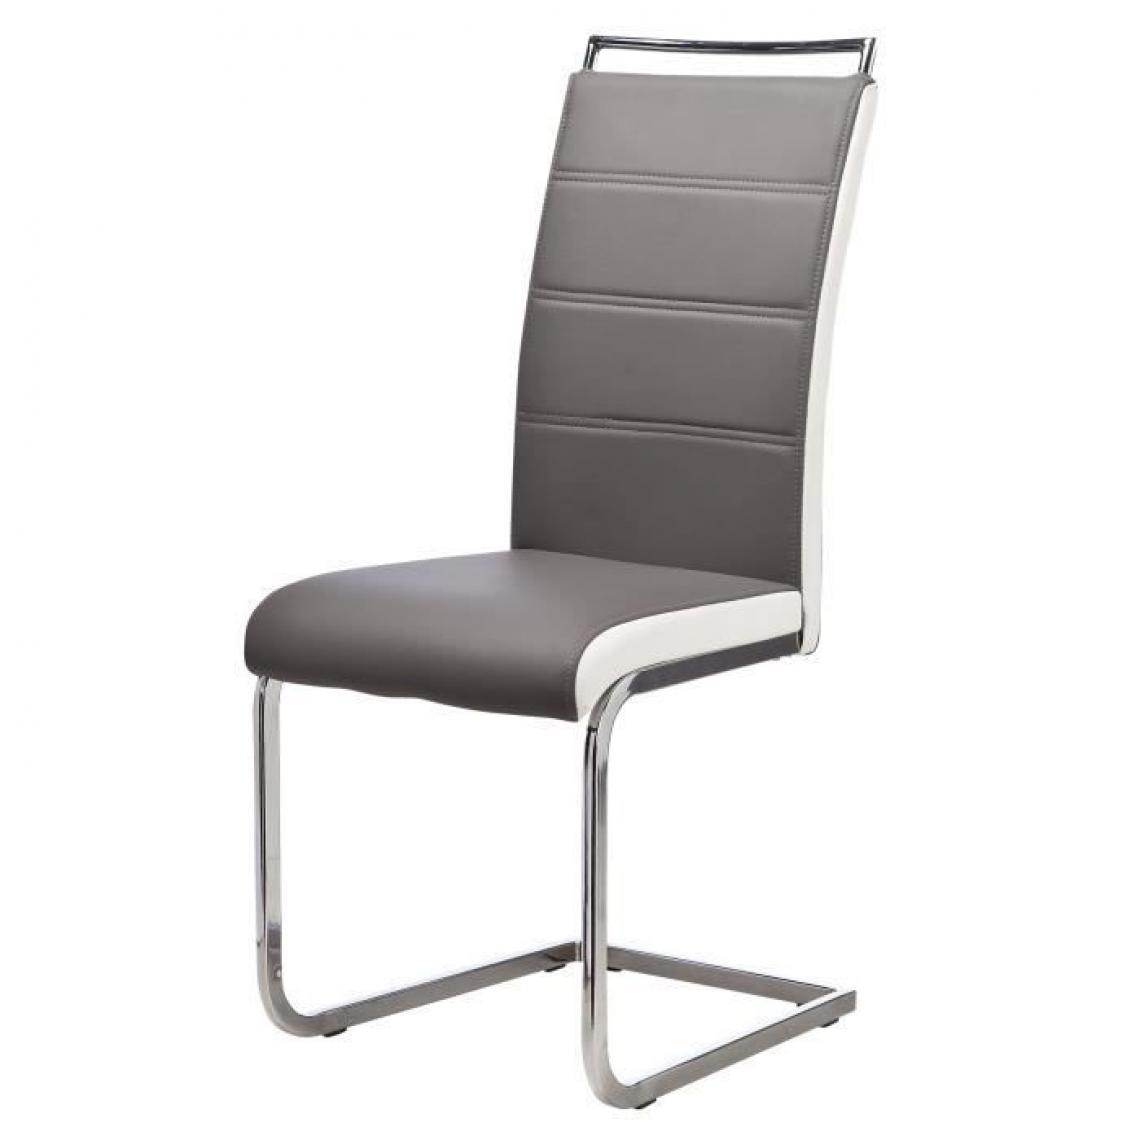 Icaverne - CHAISE DYLAN Lot de 4 chaises - Pieds métal chromé - Simili Gris et Blanc - L 42 x P 56 x H 102 cm - Chaises